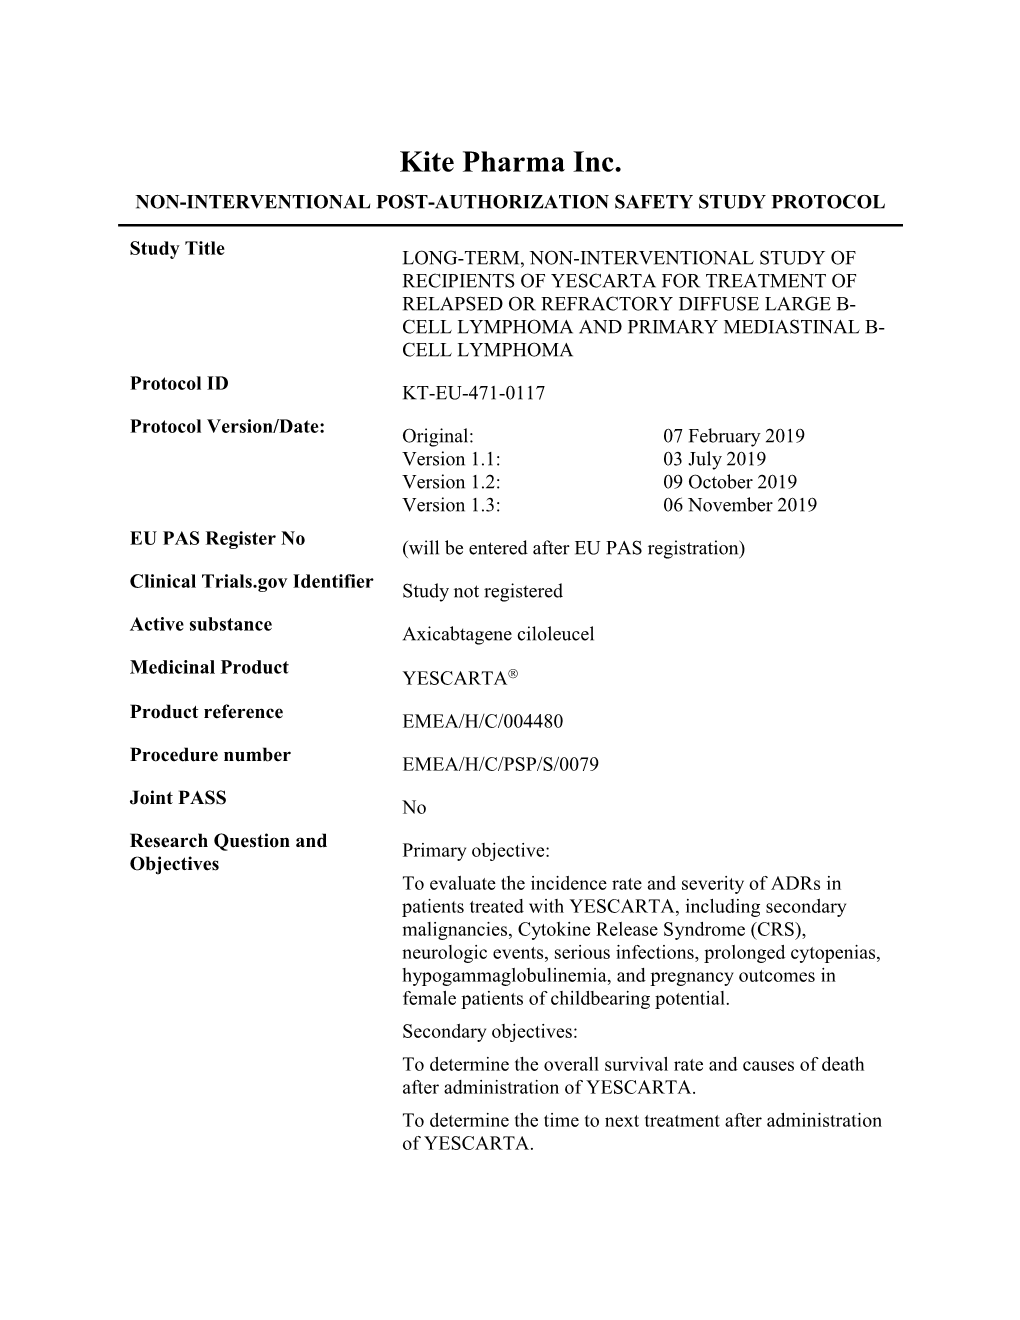 Kite Pharma Inc. NON-INTERVENTIONAL POST-AUTHORIZATION SAFETY STUDY PROTOCOL